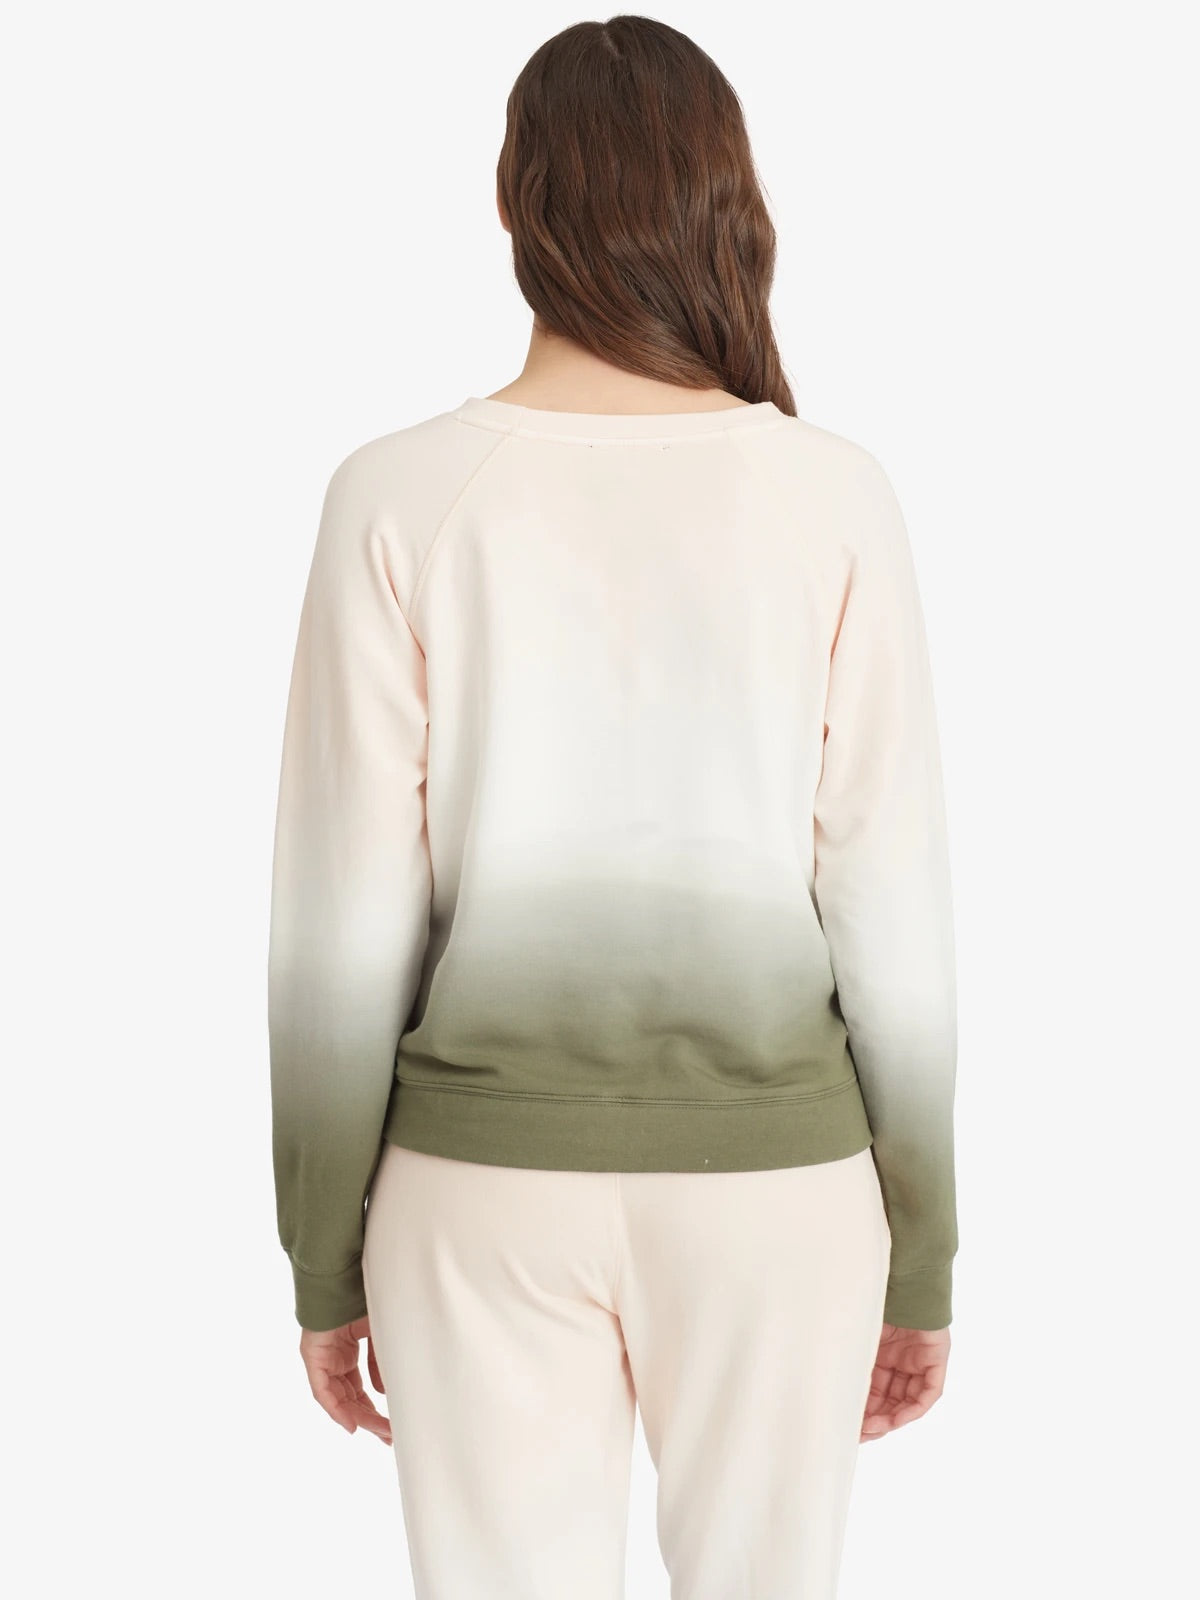 Lotus/Green Ombre Sweatshirt